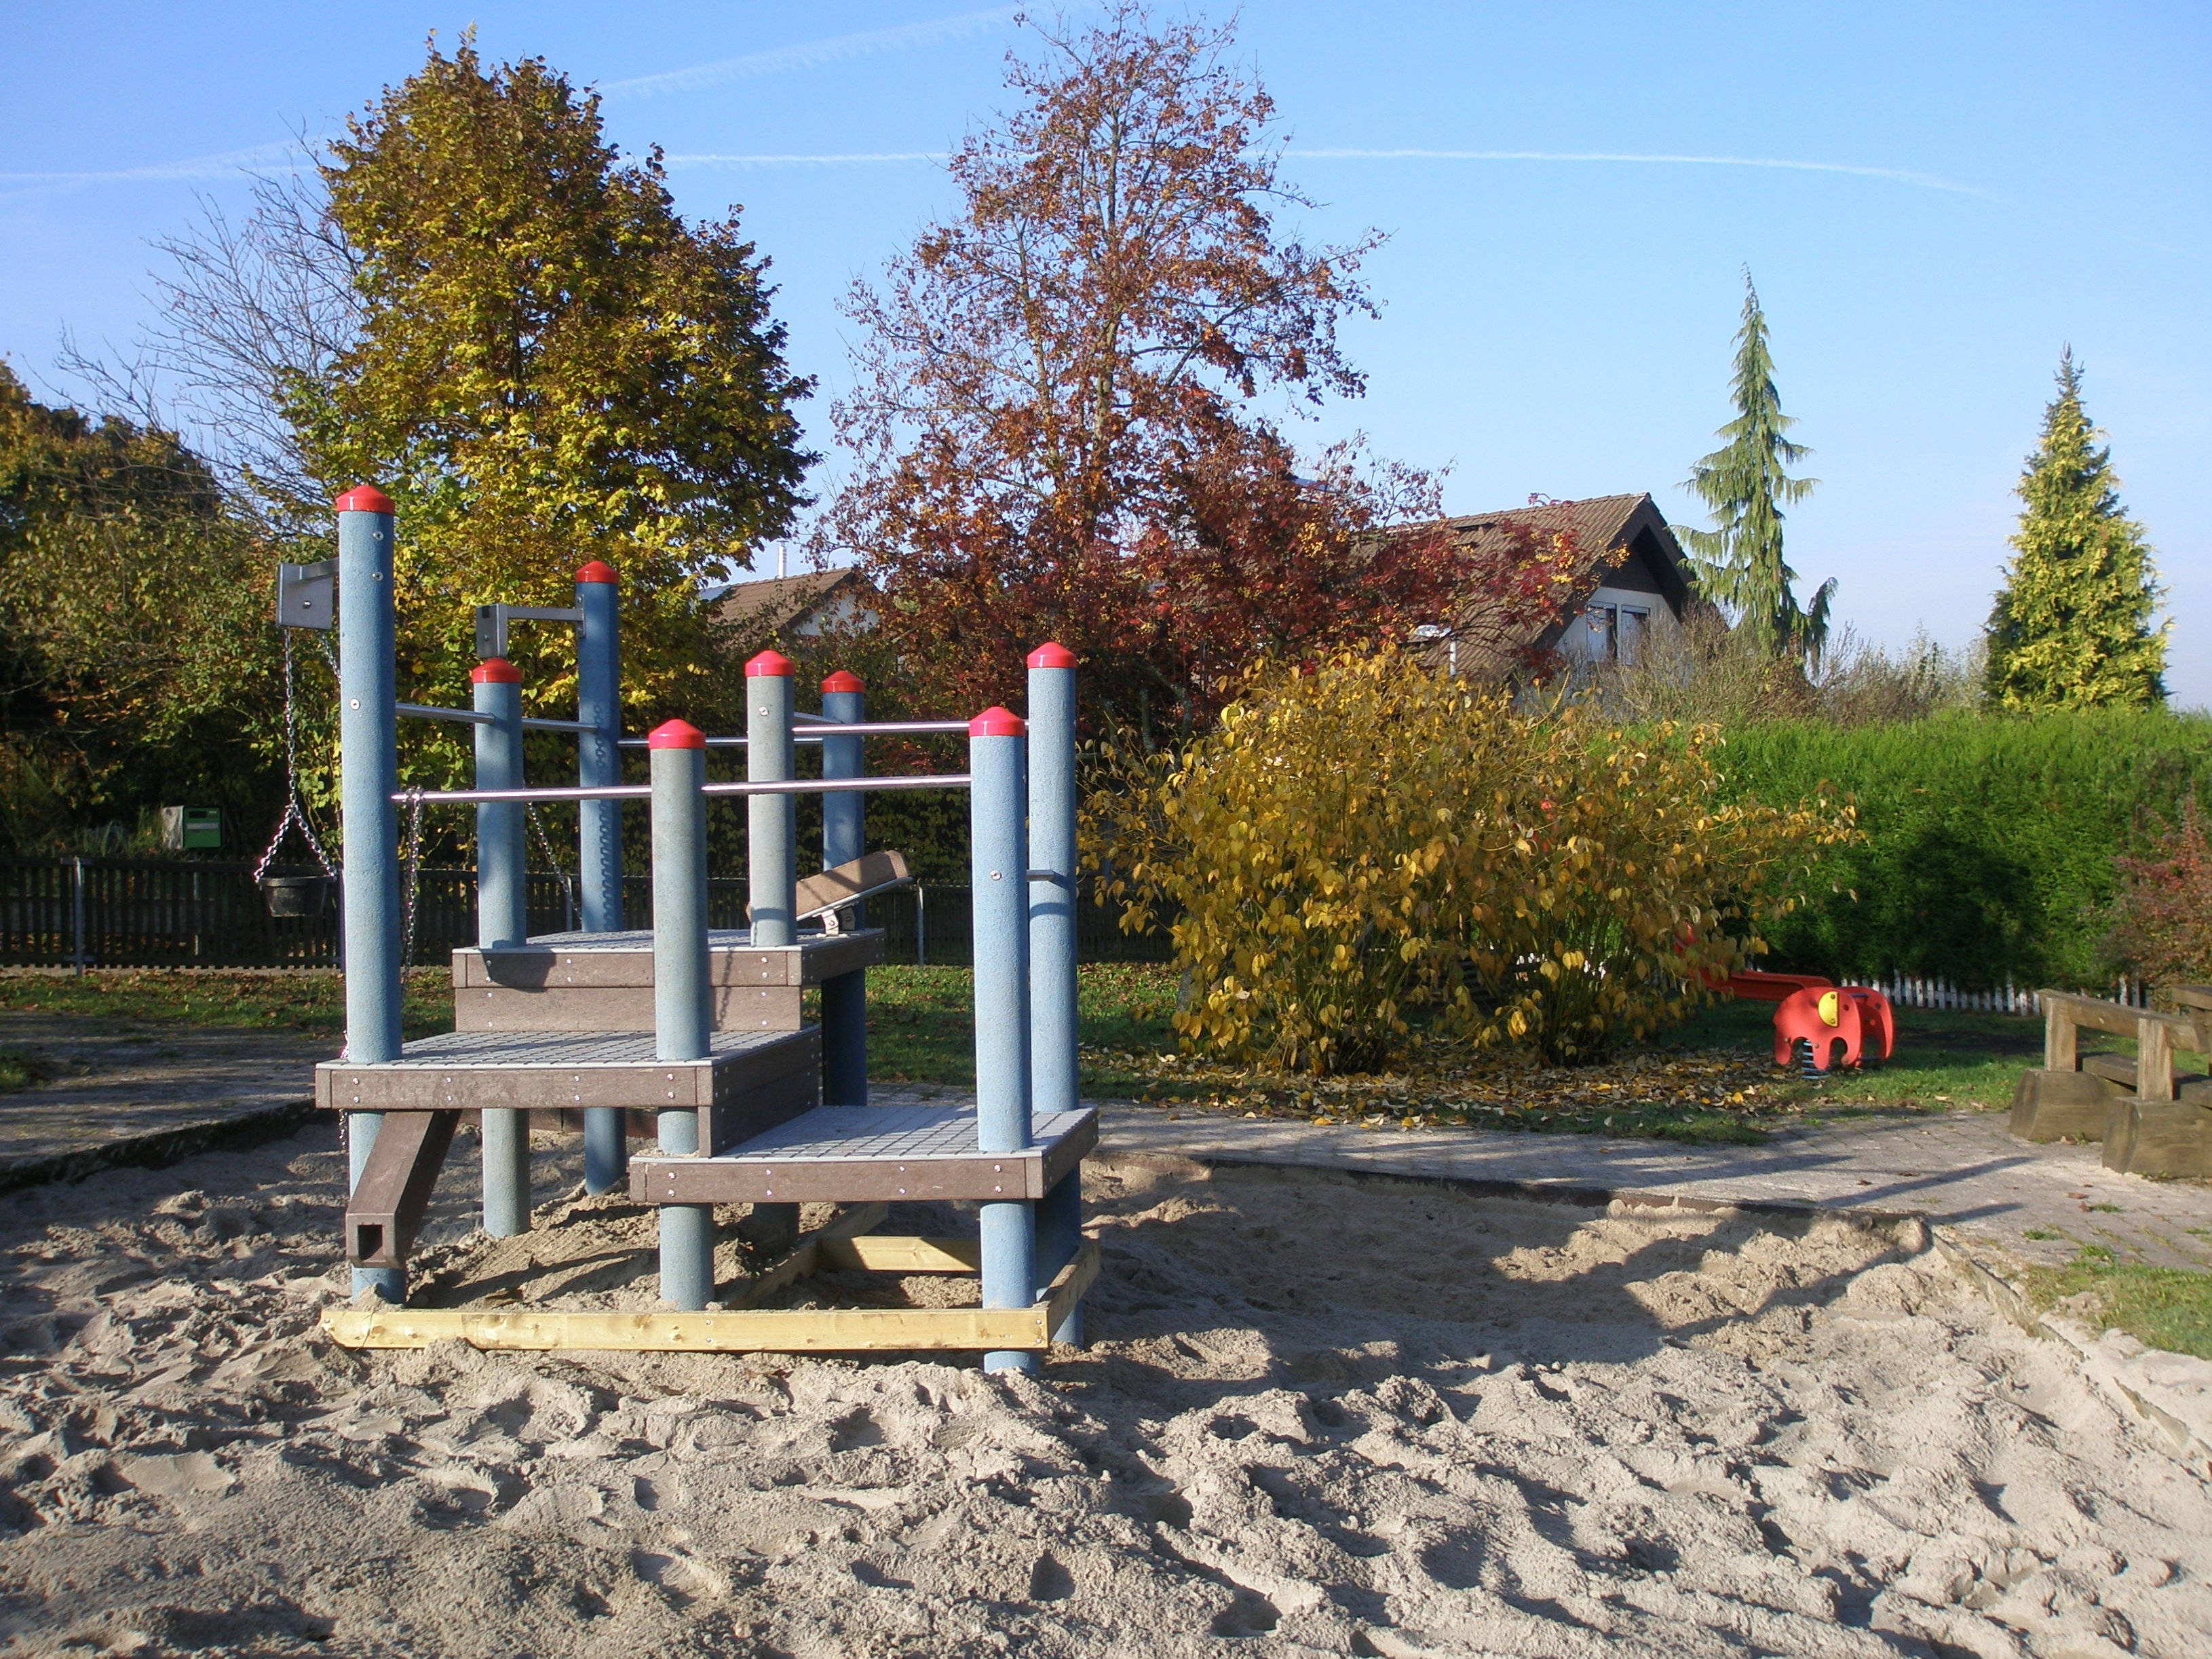 Spielplatz Grabenstraße mit Blick auf das Sandspielgerät und einem Federwipptier im Hintergrund